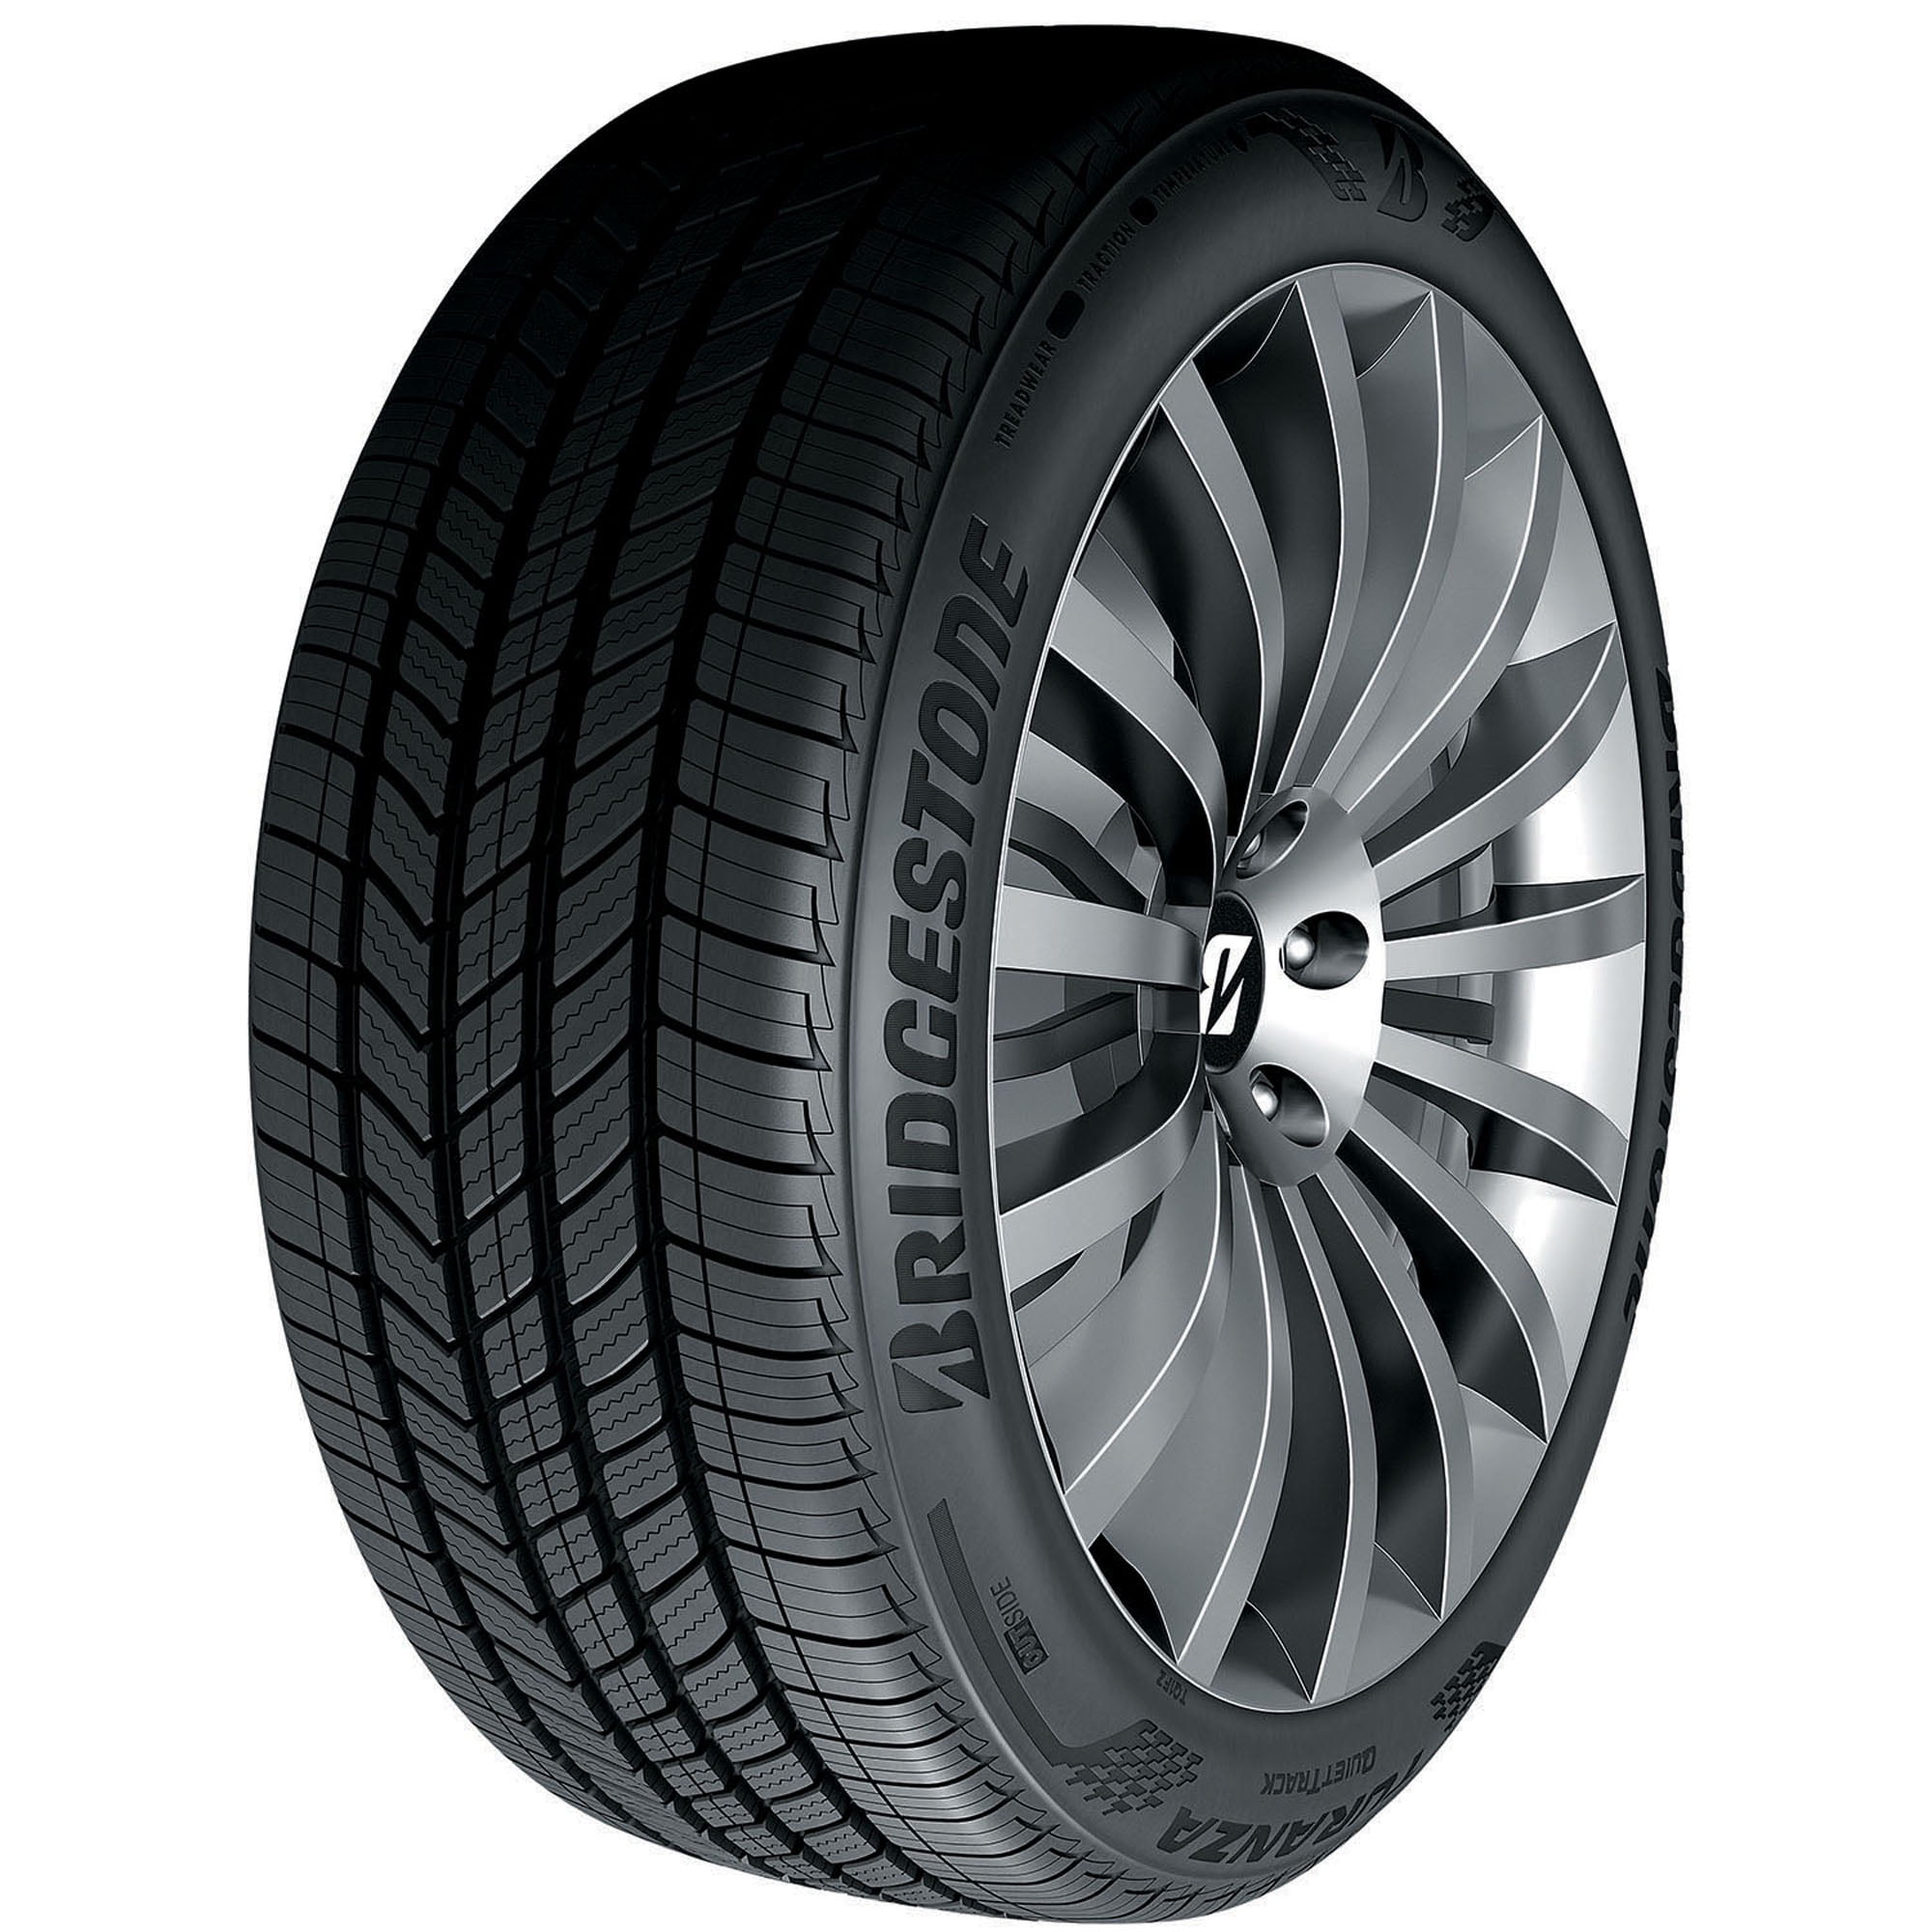 Bridgestone Turanza Quiettrack 225/55R17 97V A/S All Season Tire